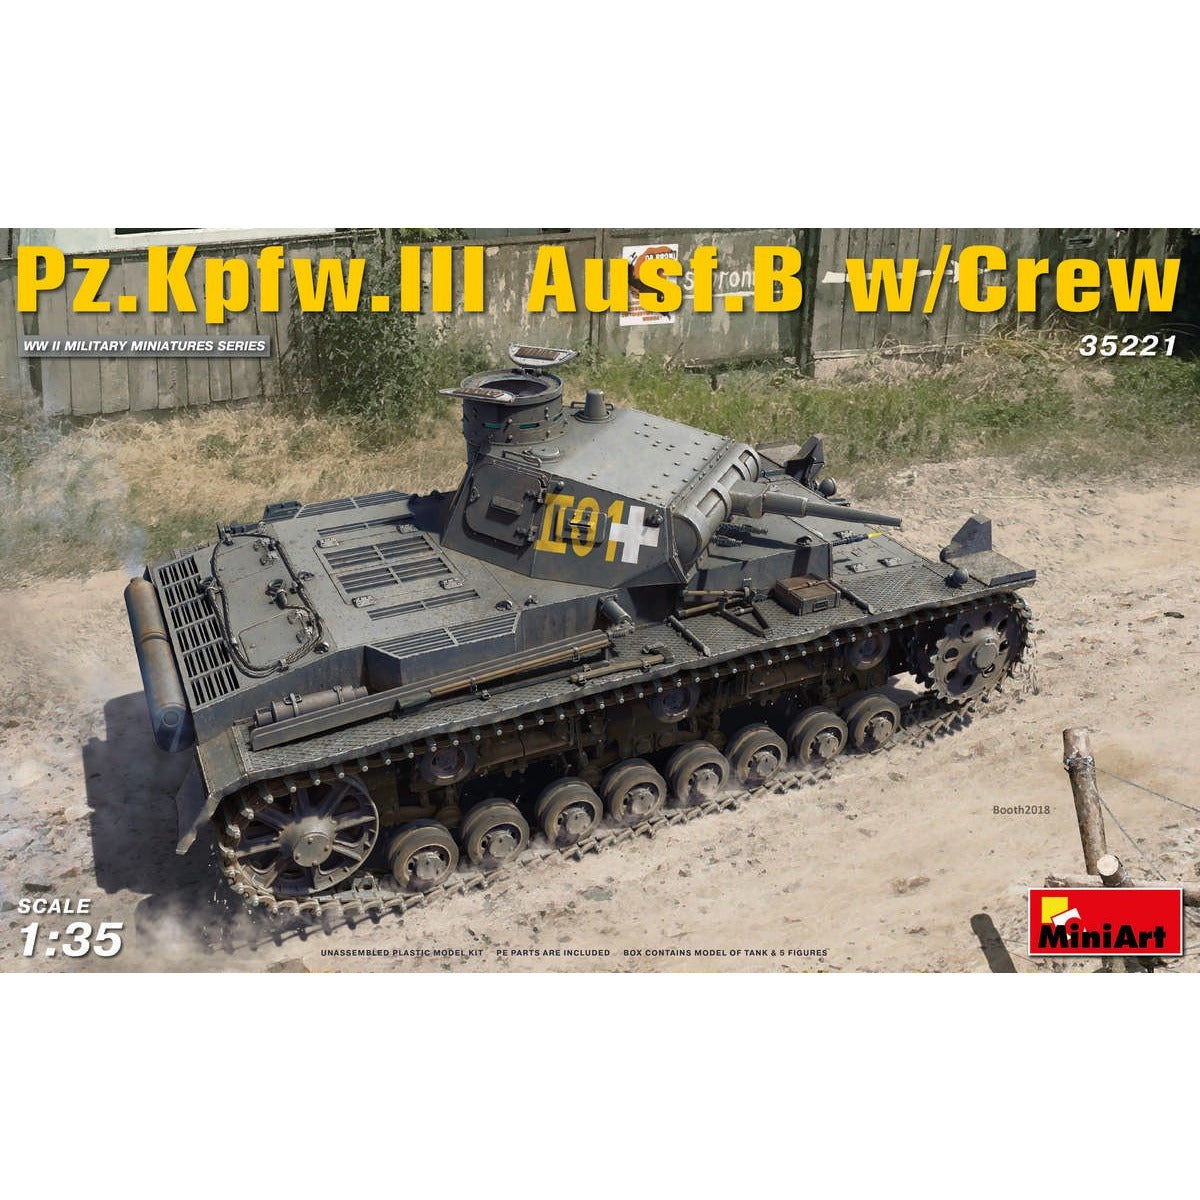 PzKpfw.III Ausf.B w/crew 1/35 by Miniart